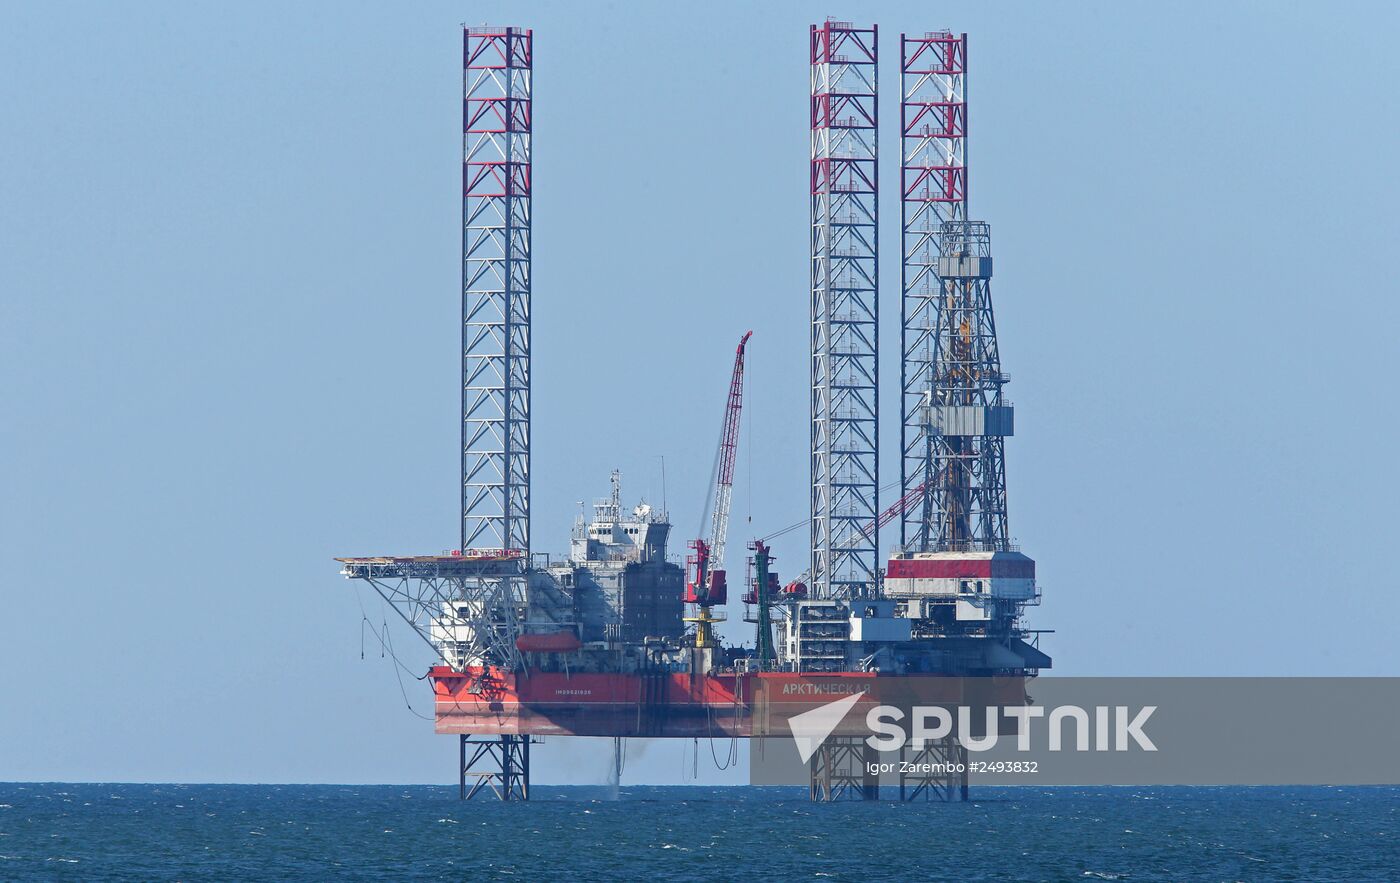 Arkticheskaya jack-up floating drilling rig